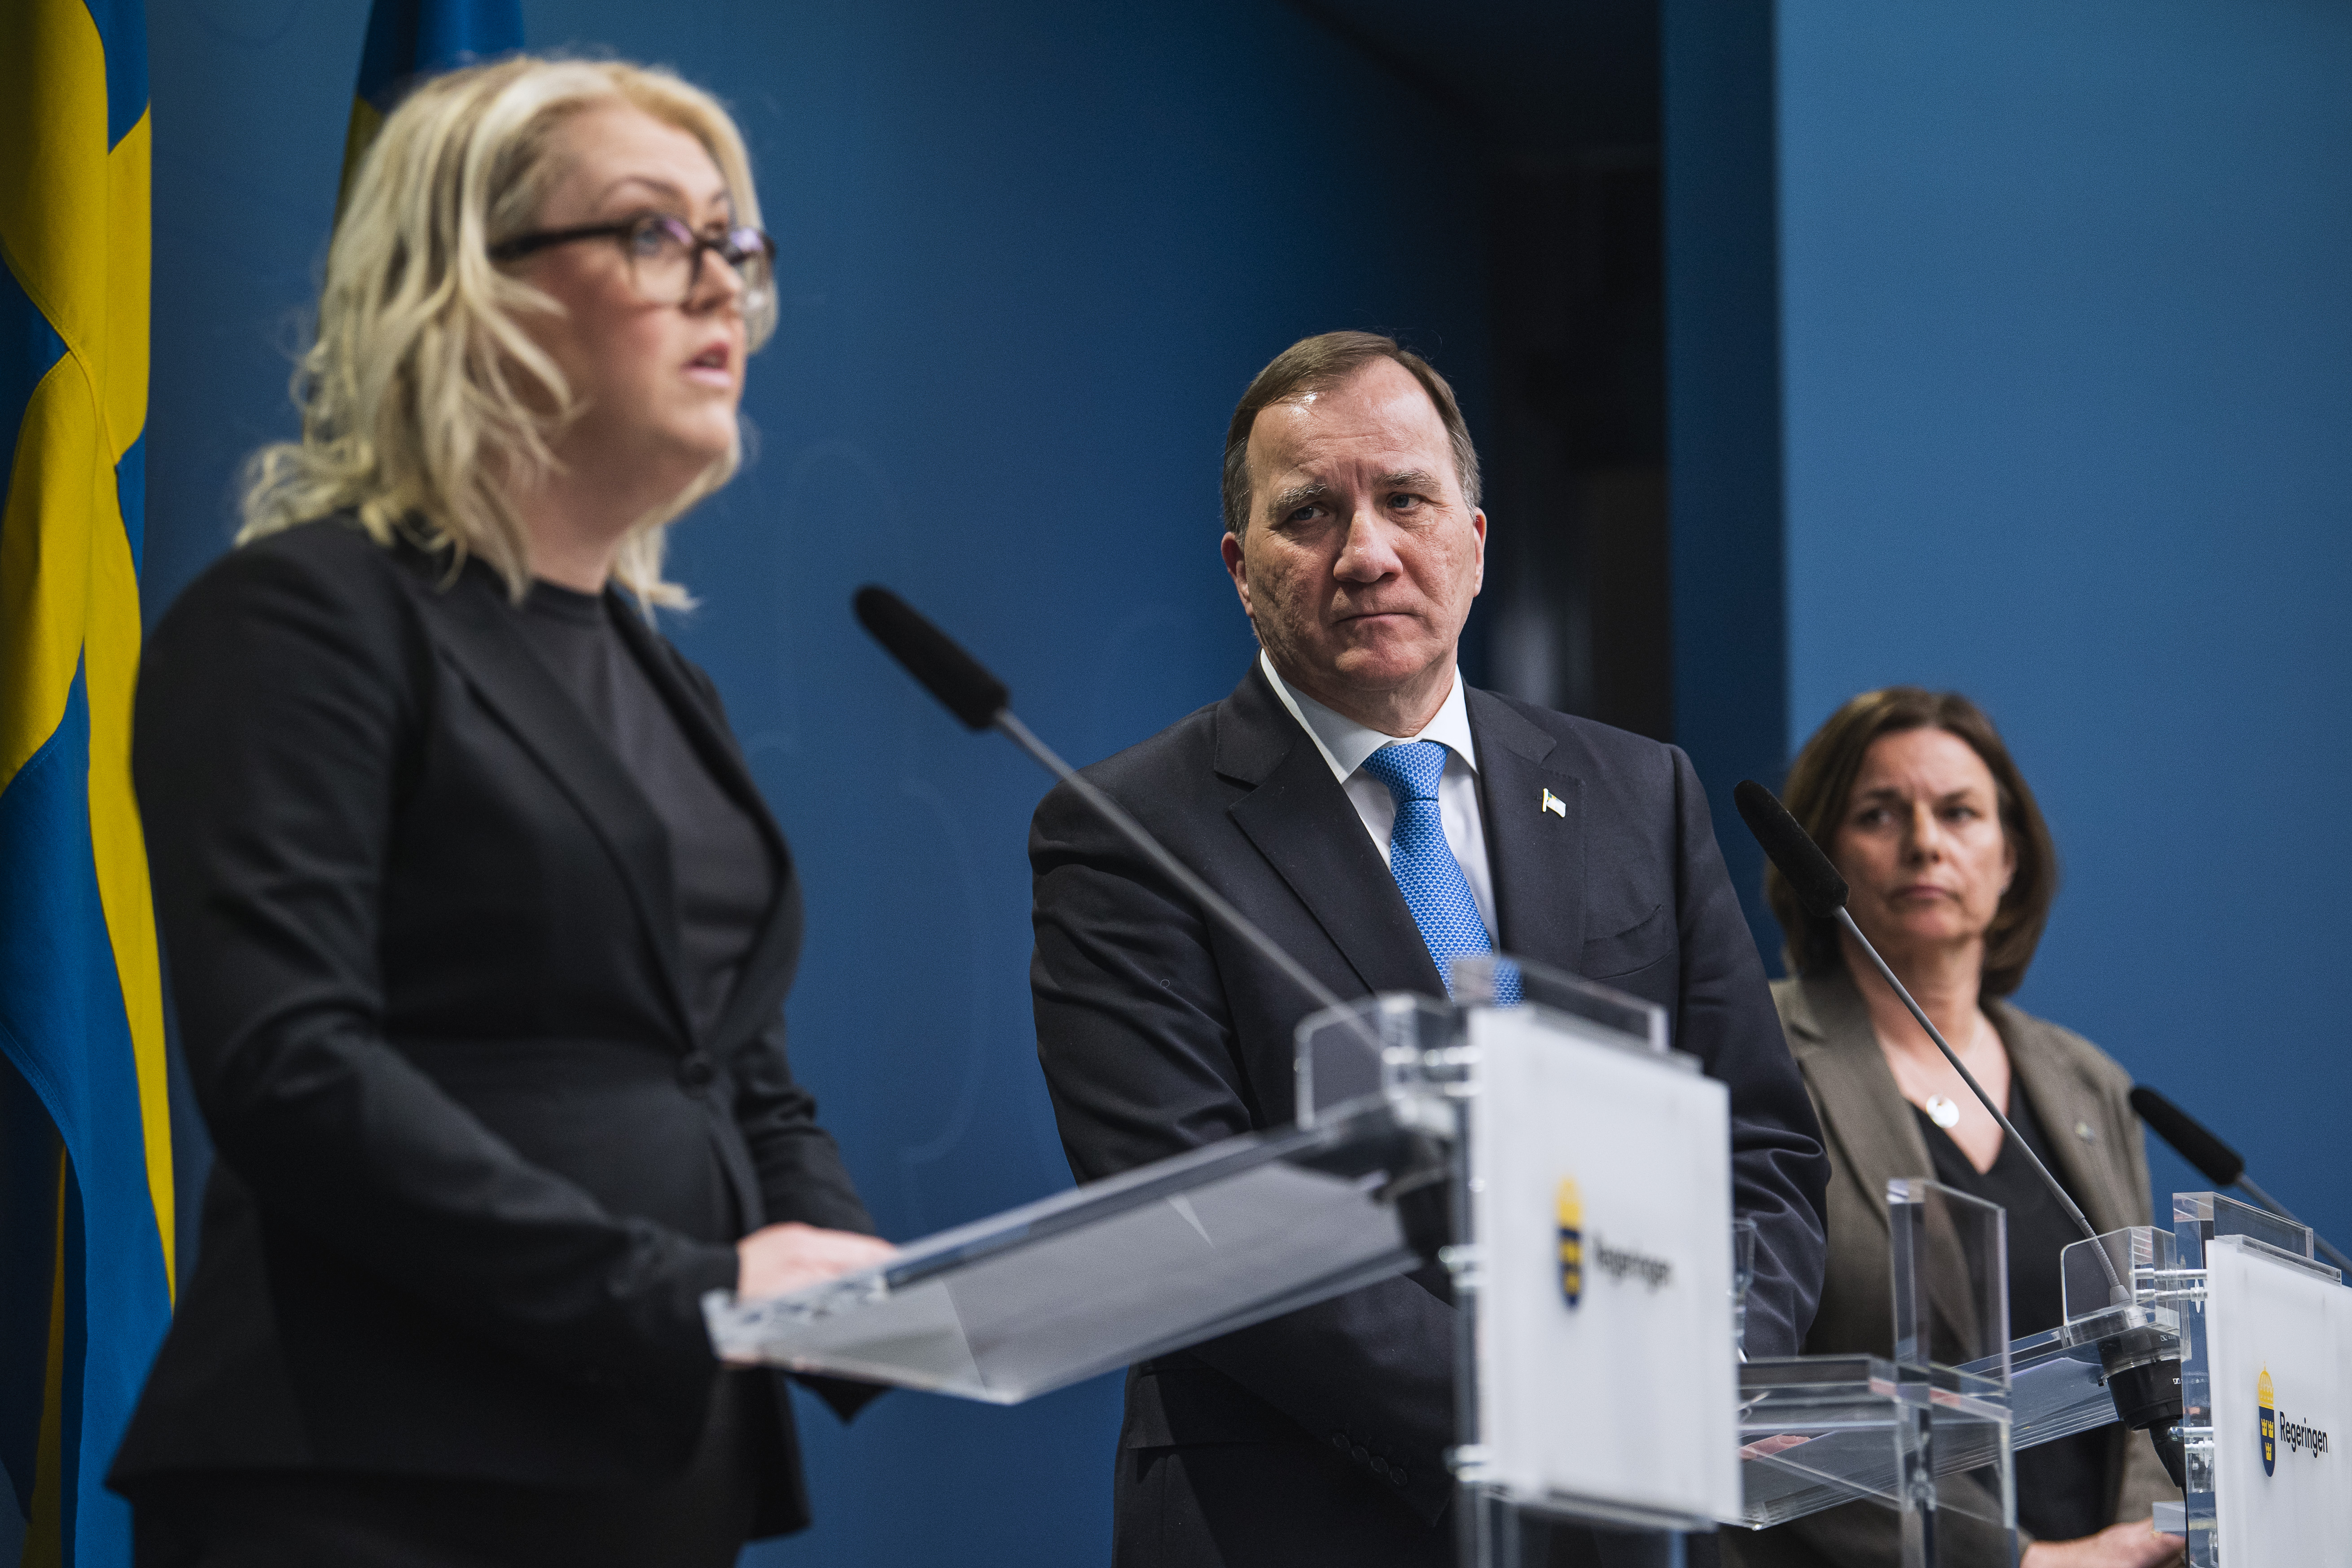 Lena Hallengren egészségügyi miniszter, Stefan Lofven miniszterelnök és Isabella Lövin miniszterelnök-helyettes egy március 31-i sajtótájékoztatón